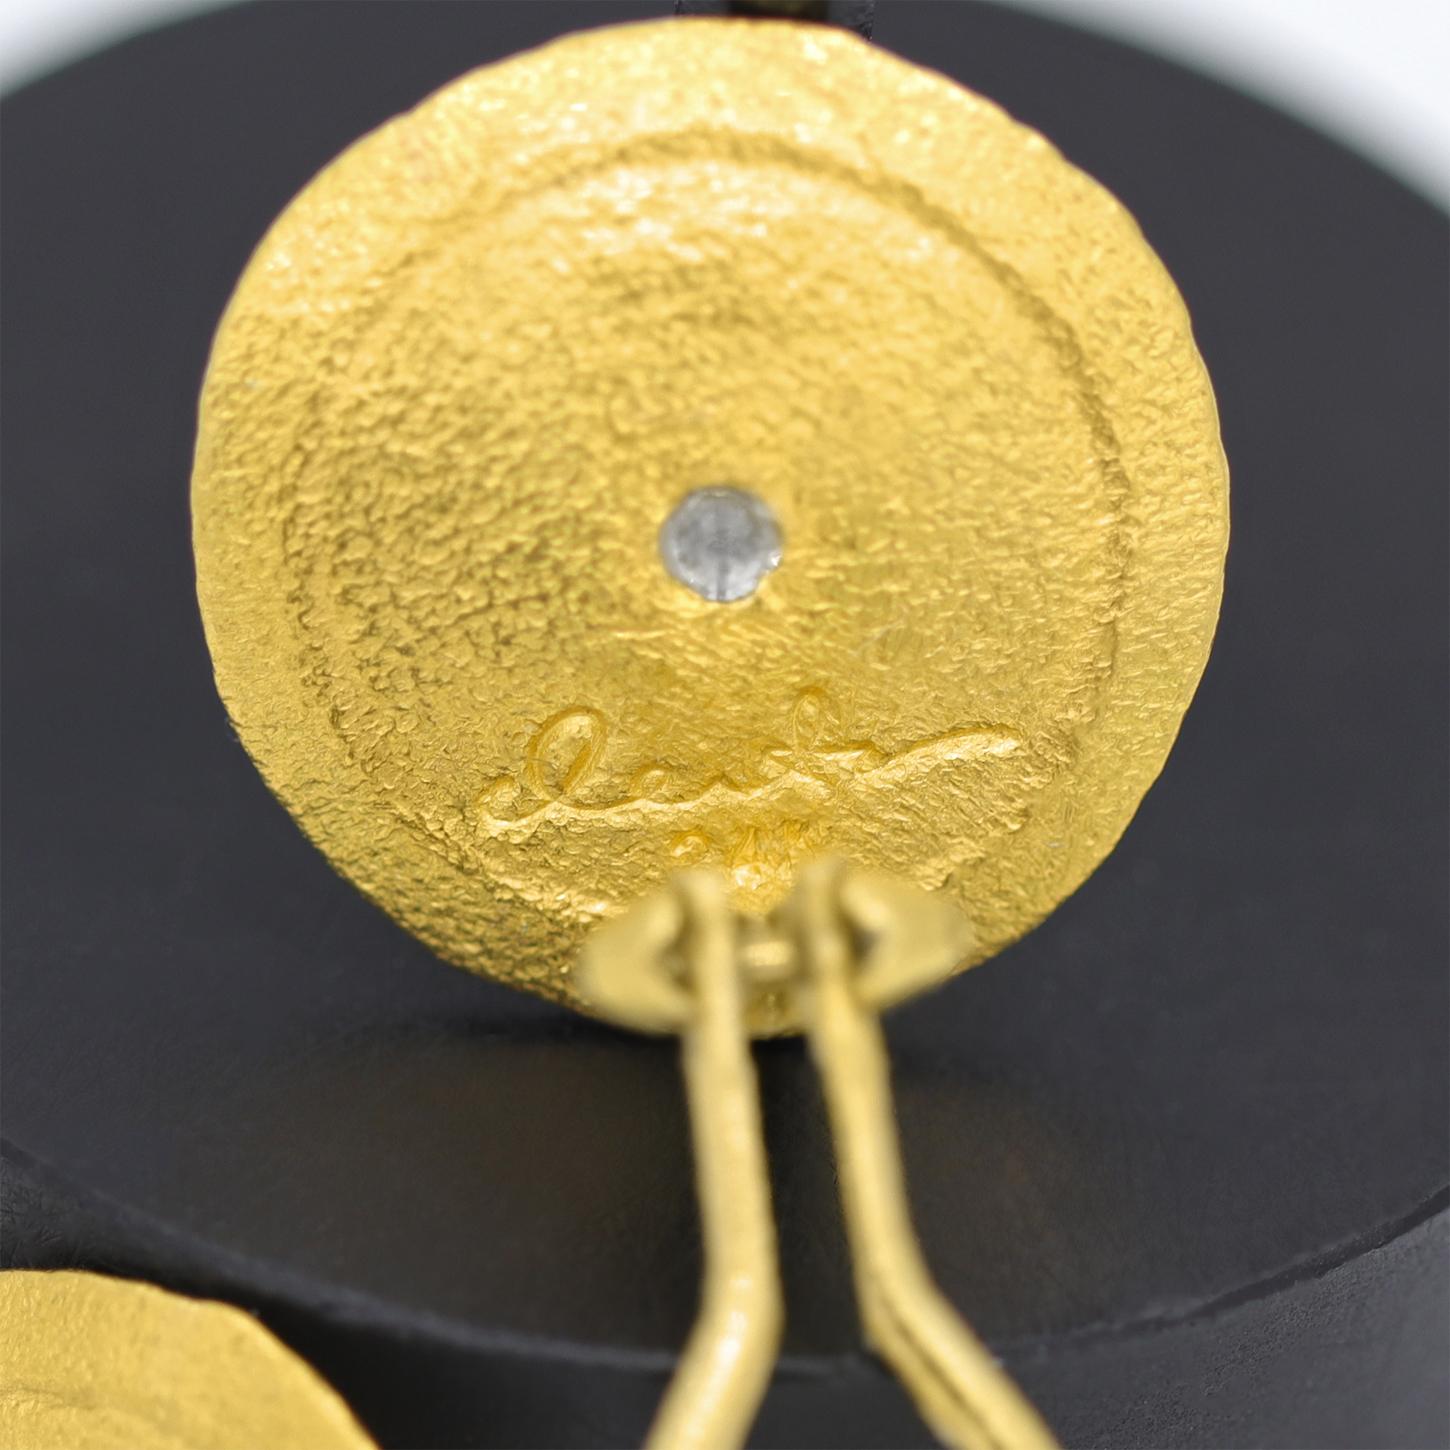 Les clous d'oreilles soleil de Devta Doolan, joaillier renommé, sont fabriqués à la main en or jaune pur 24 carats à la texture complexe, rehaussés d'une paire de diamants blancs ronds de taille brillant F/vs1 et montés sur des clips en or jaune 18